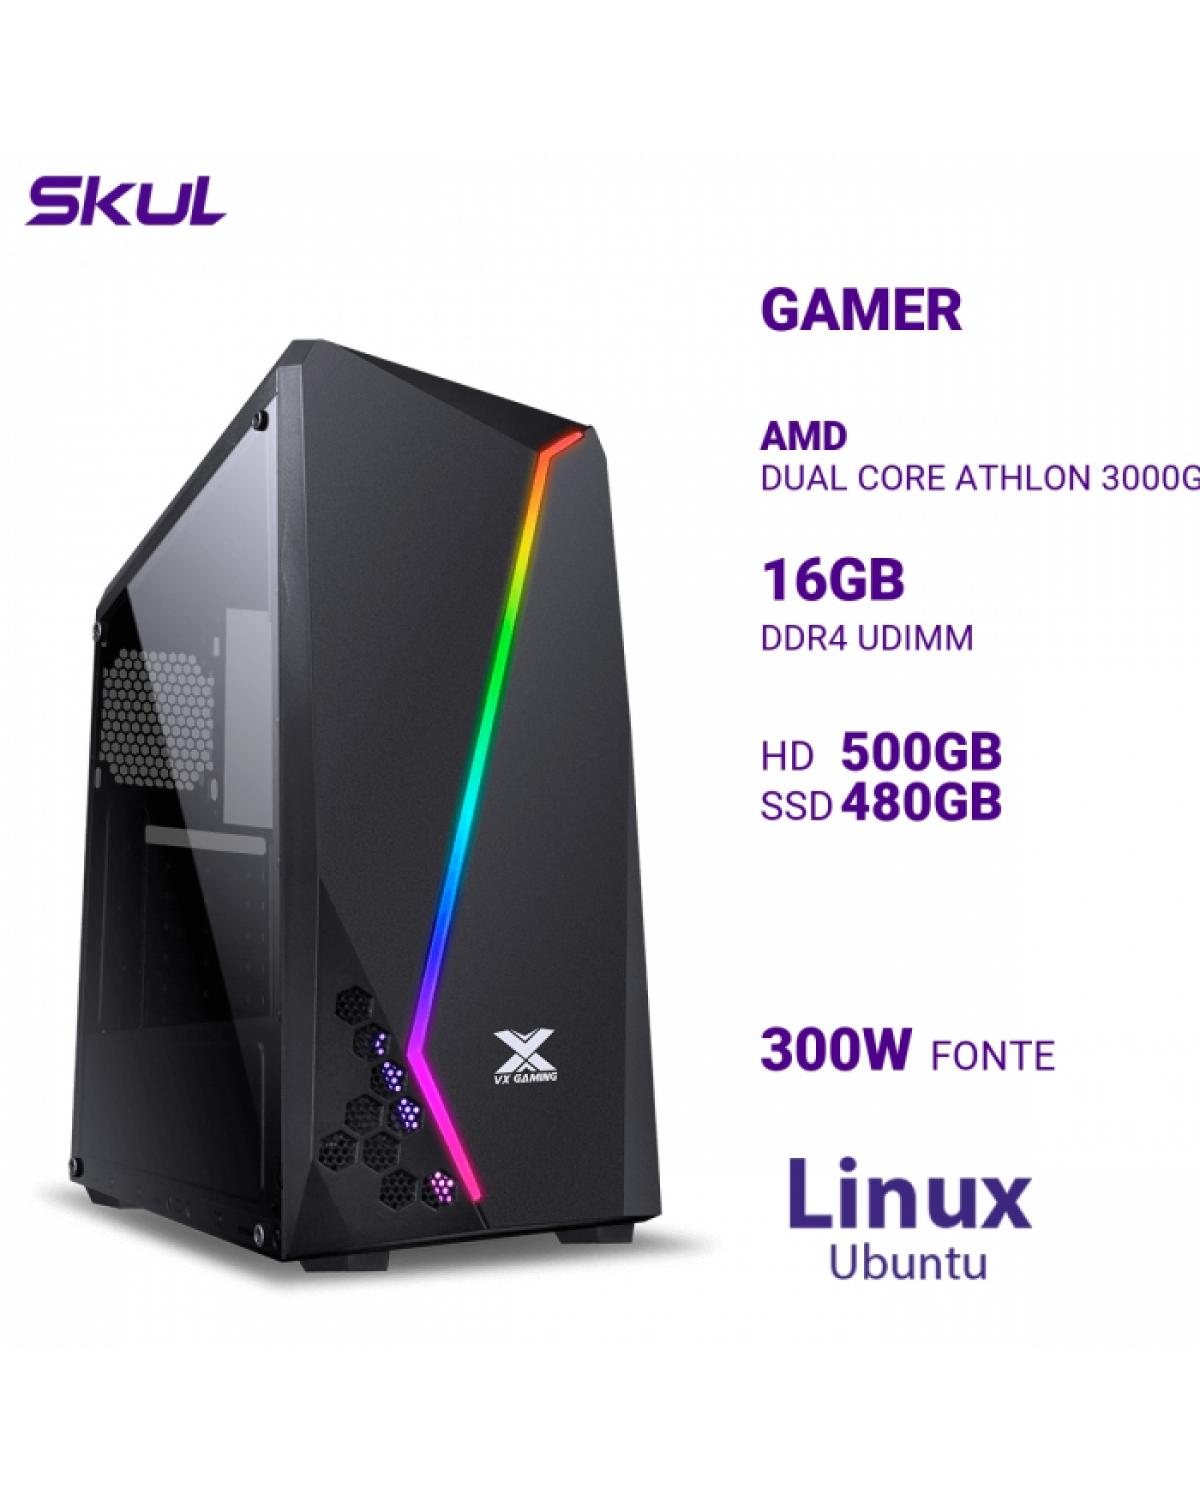 COMPUTADOR GAMER 1000 DUAL CORE ATHLON 3000G 3.50GHZ MEM 16GB DDR4 HD 500GB SSD 480GB FONTE 300W LINUX